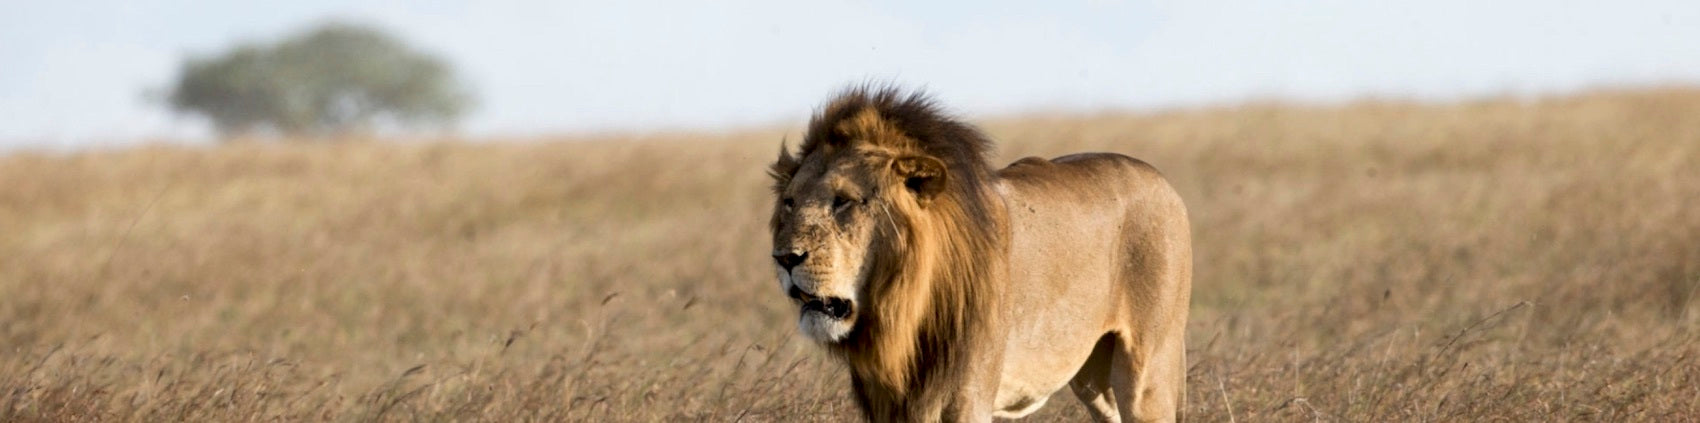 Lion dans une reserve en Afrique